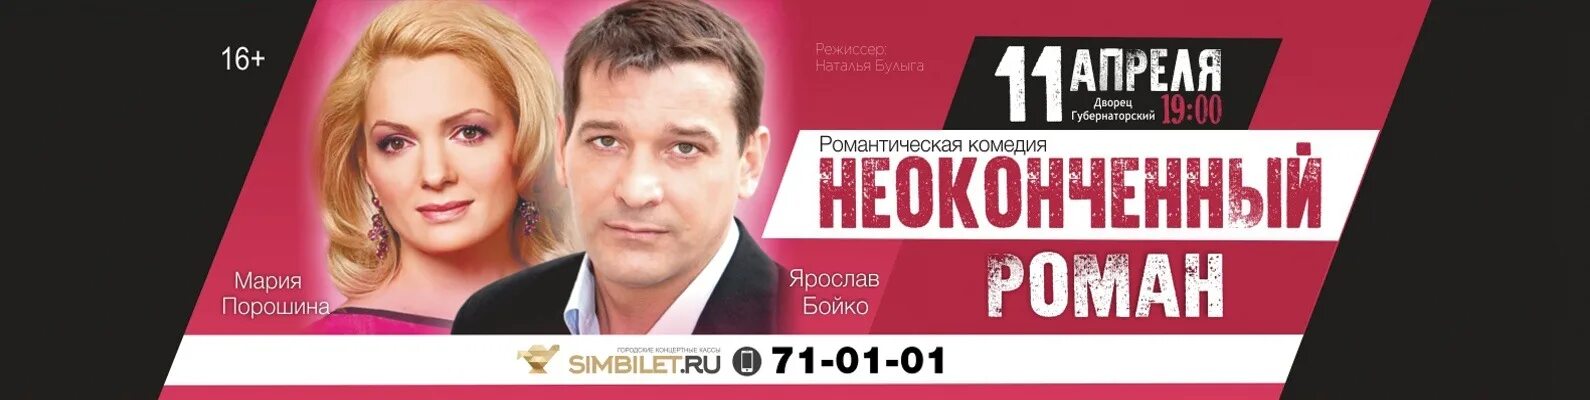 Ульяновск губернаторский купить билеты